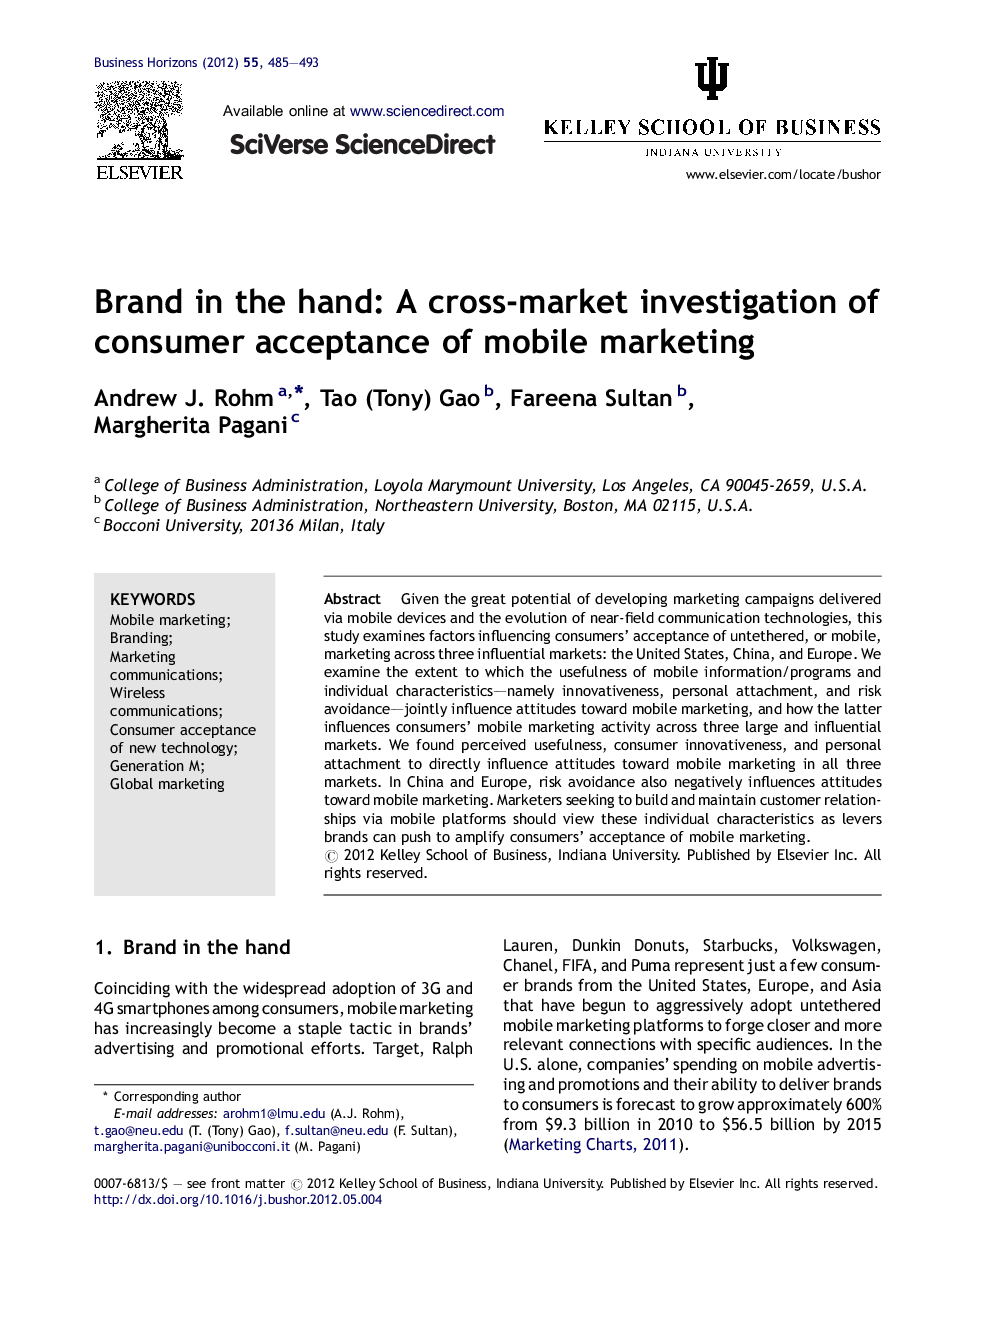 نام تجاری در دست: یک تحقیق متقابل در بازار از پذیرش بازاریابی تلفن همراه (موبایل) توسط مصرف کننده